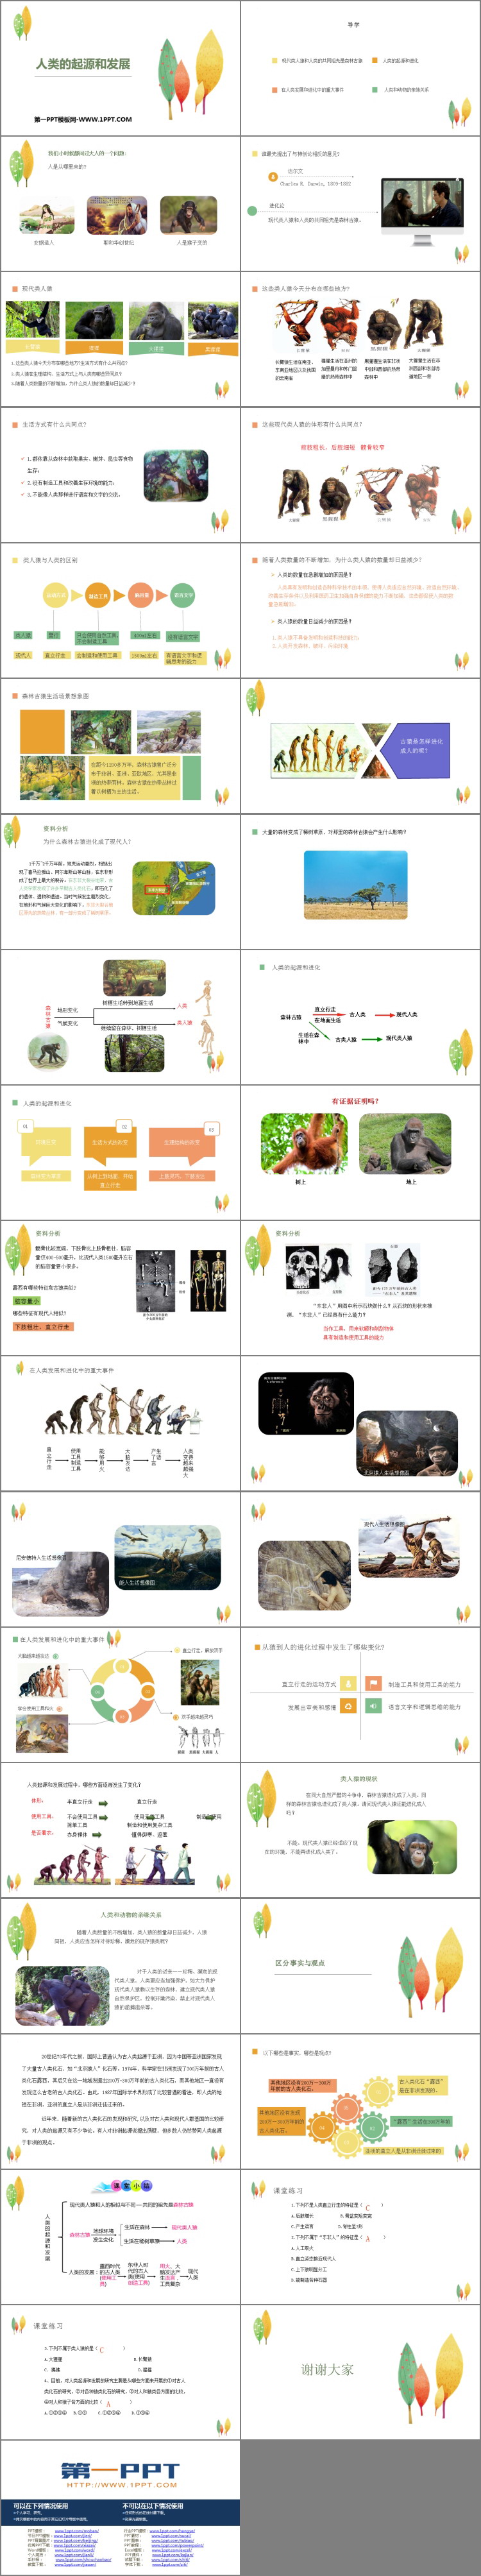 《人类的起源和发展》PPT优质课件-预览图02